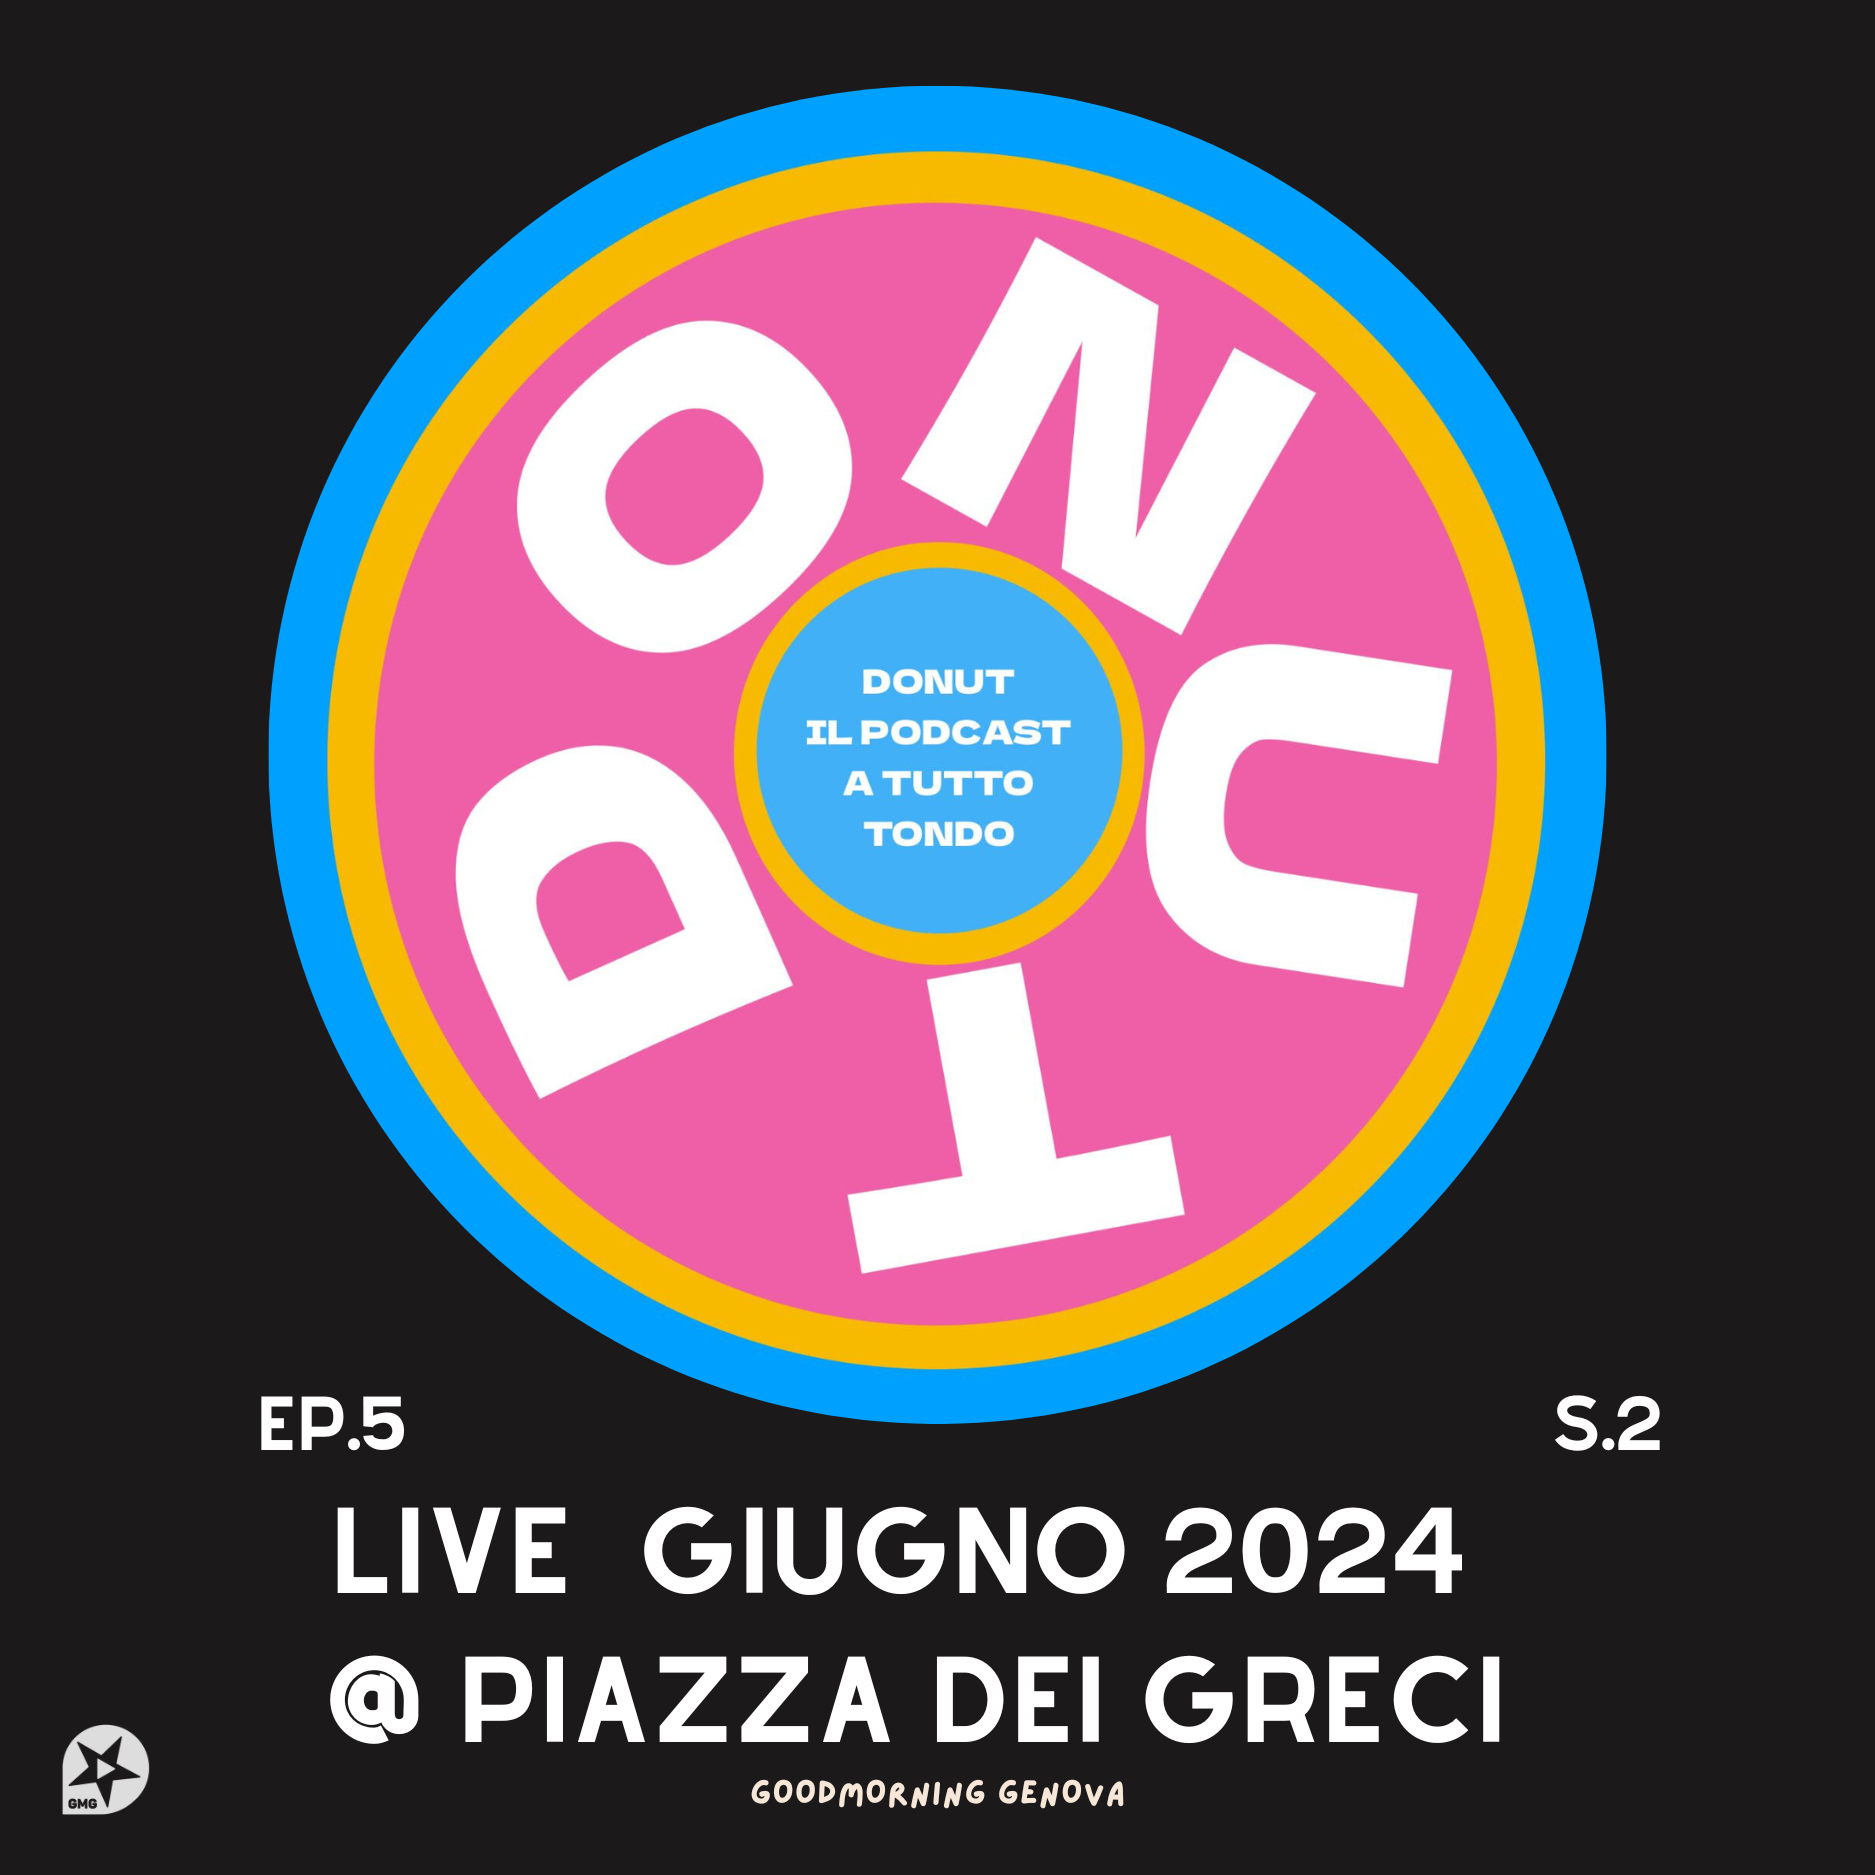 Donut S2 E5 - LIVE  Giugno 2024 @ Piazza dei Greci